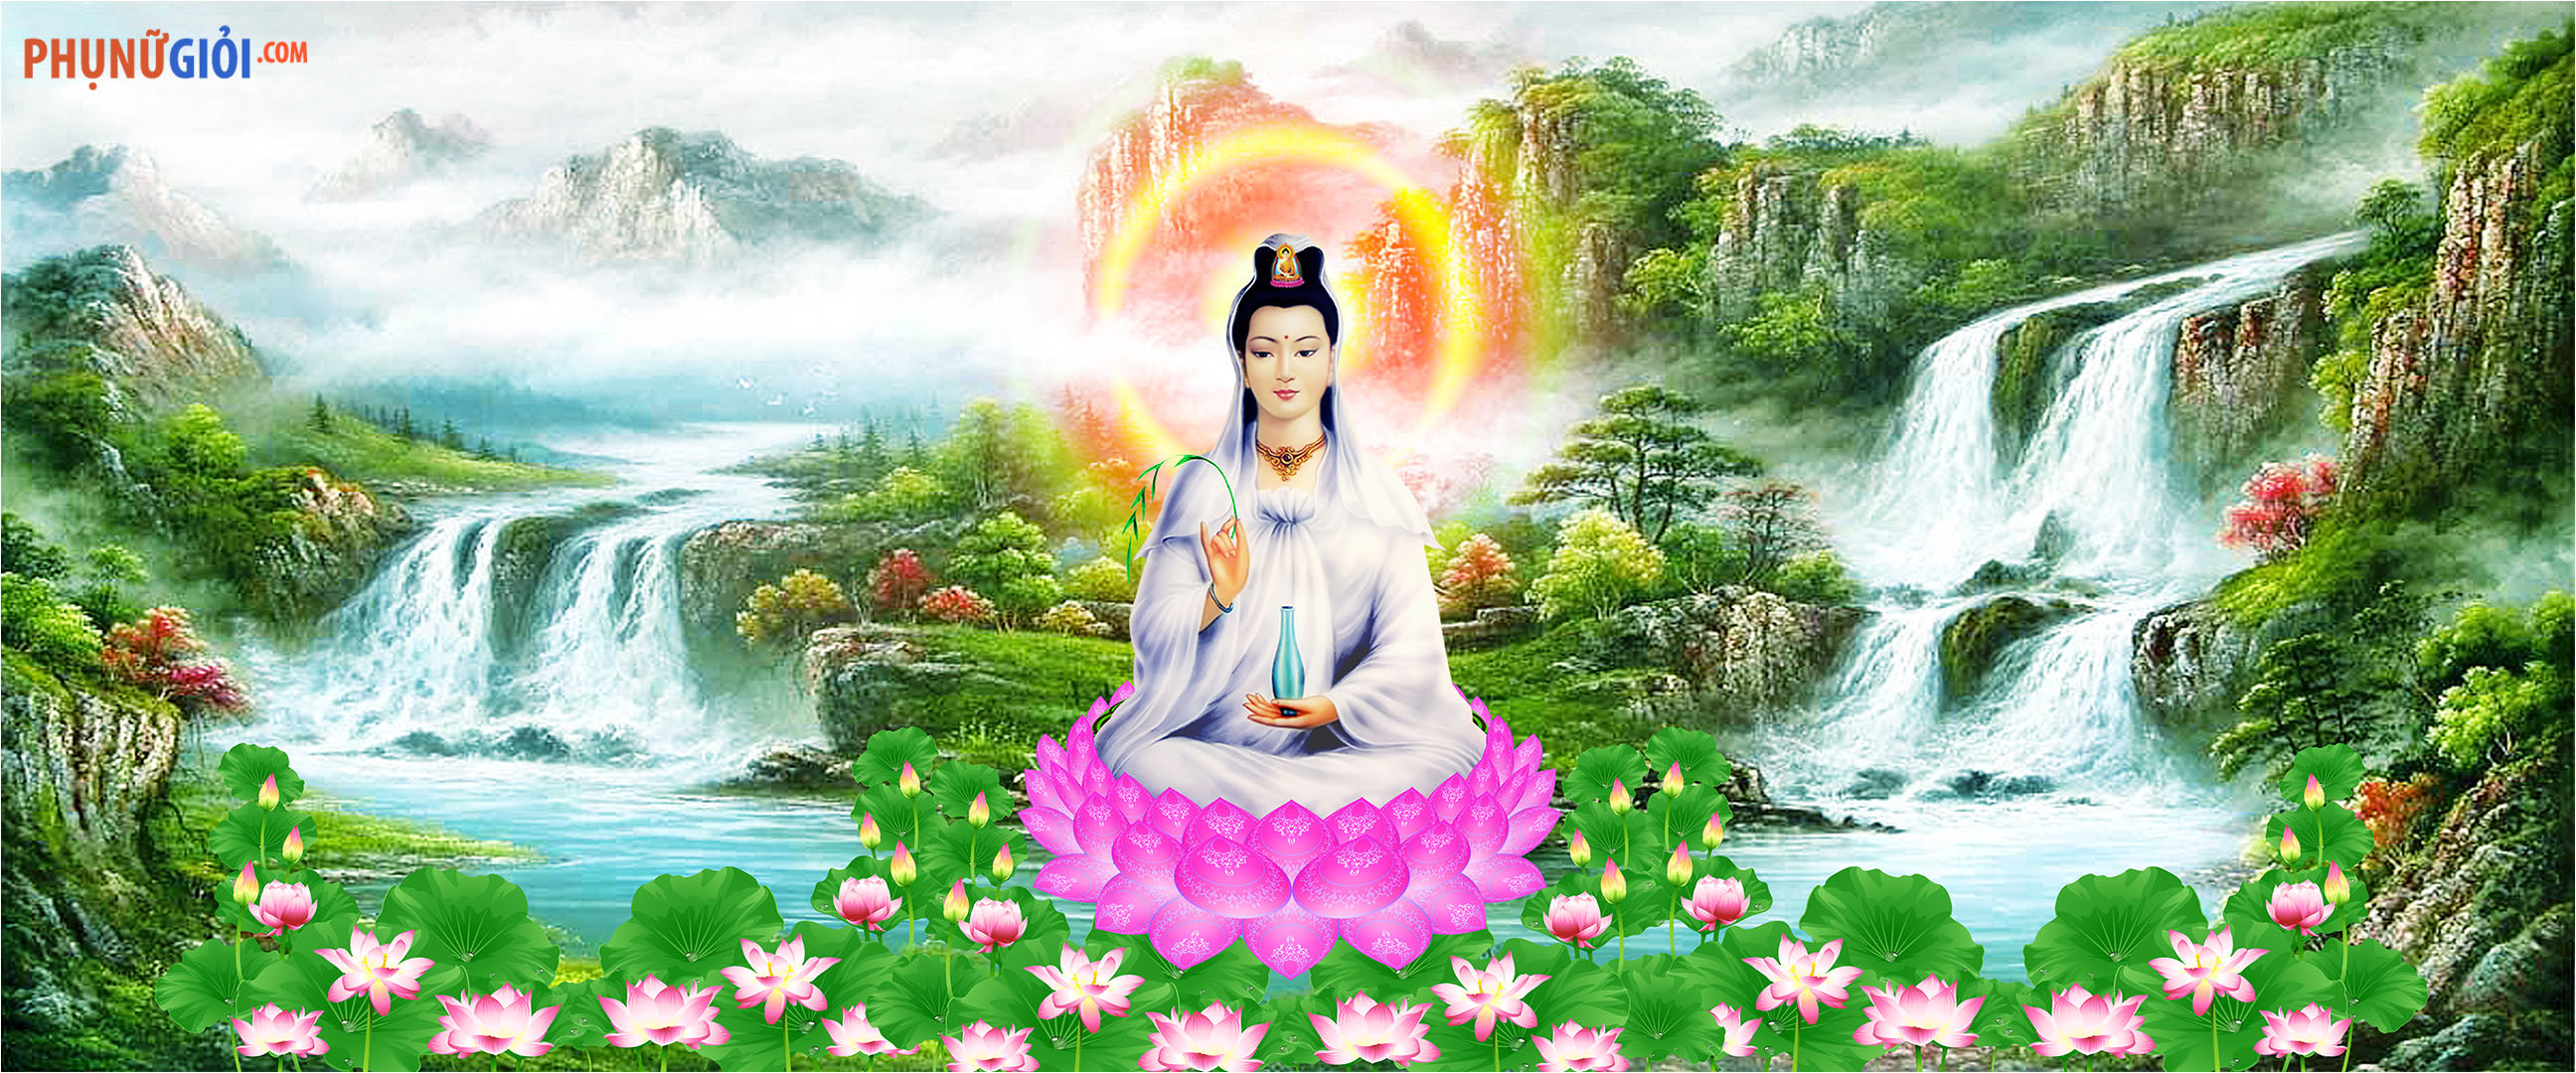 Hãy để lòng yên bình và tràn đầy cảm nhận khi chúng ta đón nhìn hình ảnh Phật Quan Thế Âm Bồ Tát. Hình tượng của Đức Phật này đại diện cho tình yêu thương vô hạn và lòng từ bi, và luôn trở thành niềm an ủi cho những người đang khốn khó và cần sự chia sẻ.